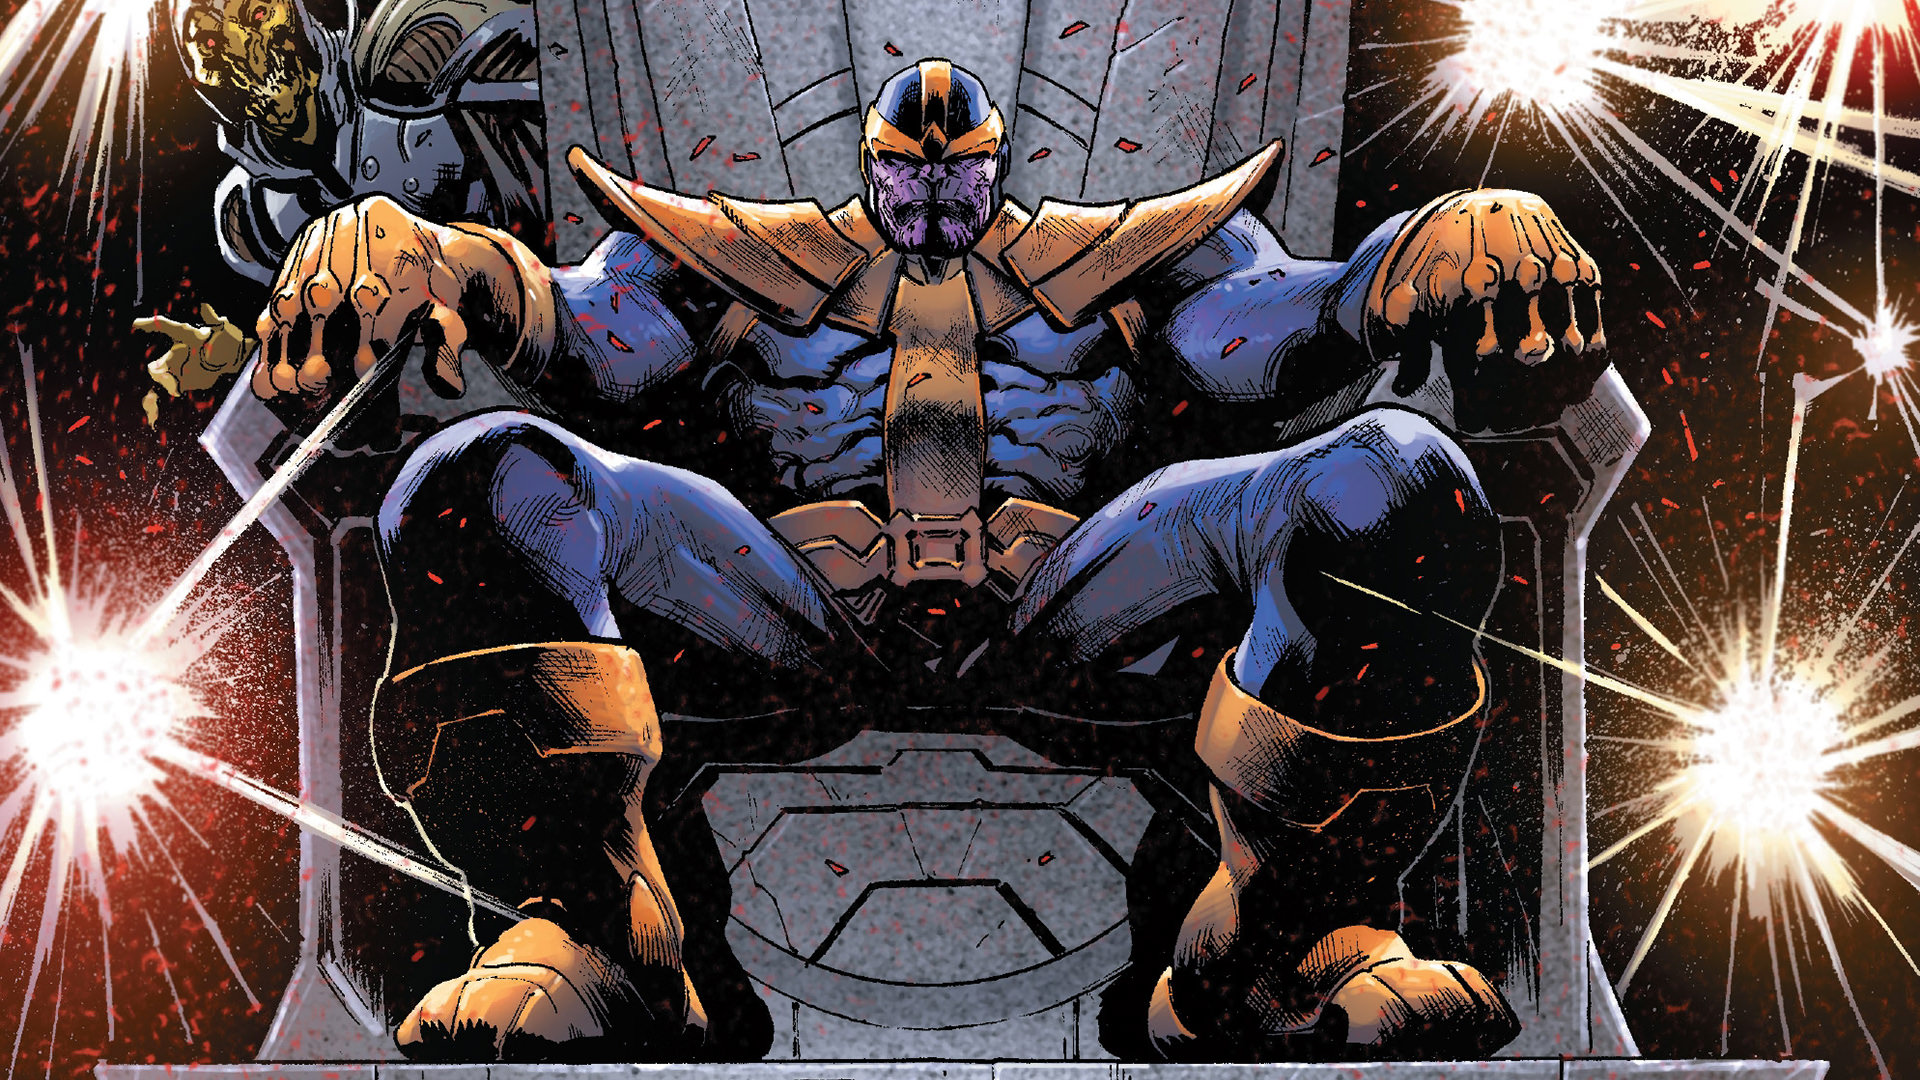 Vua Thanos hùng mạnh